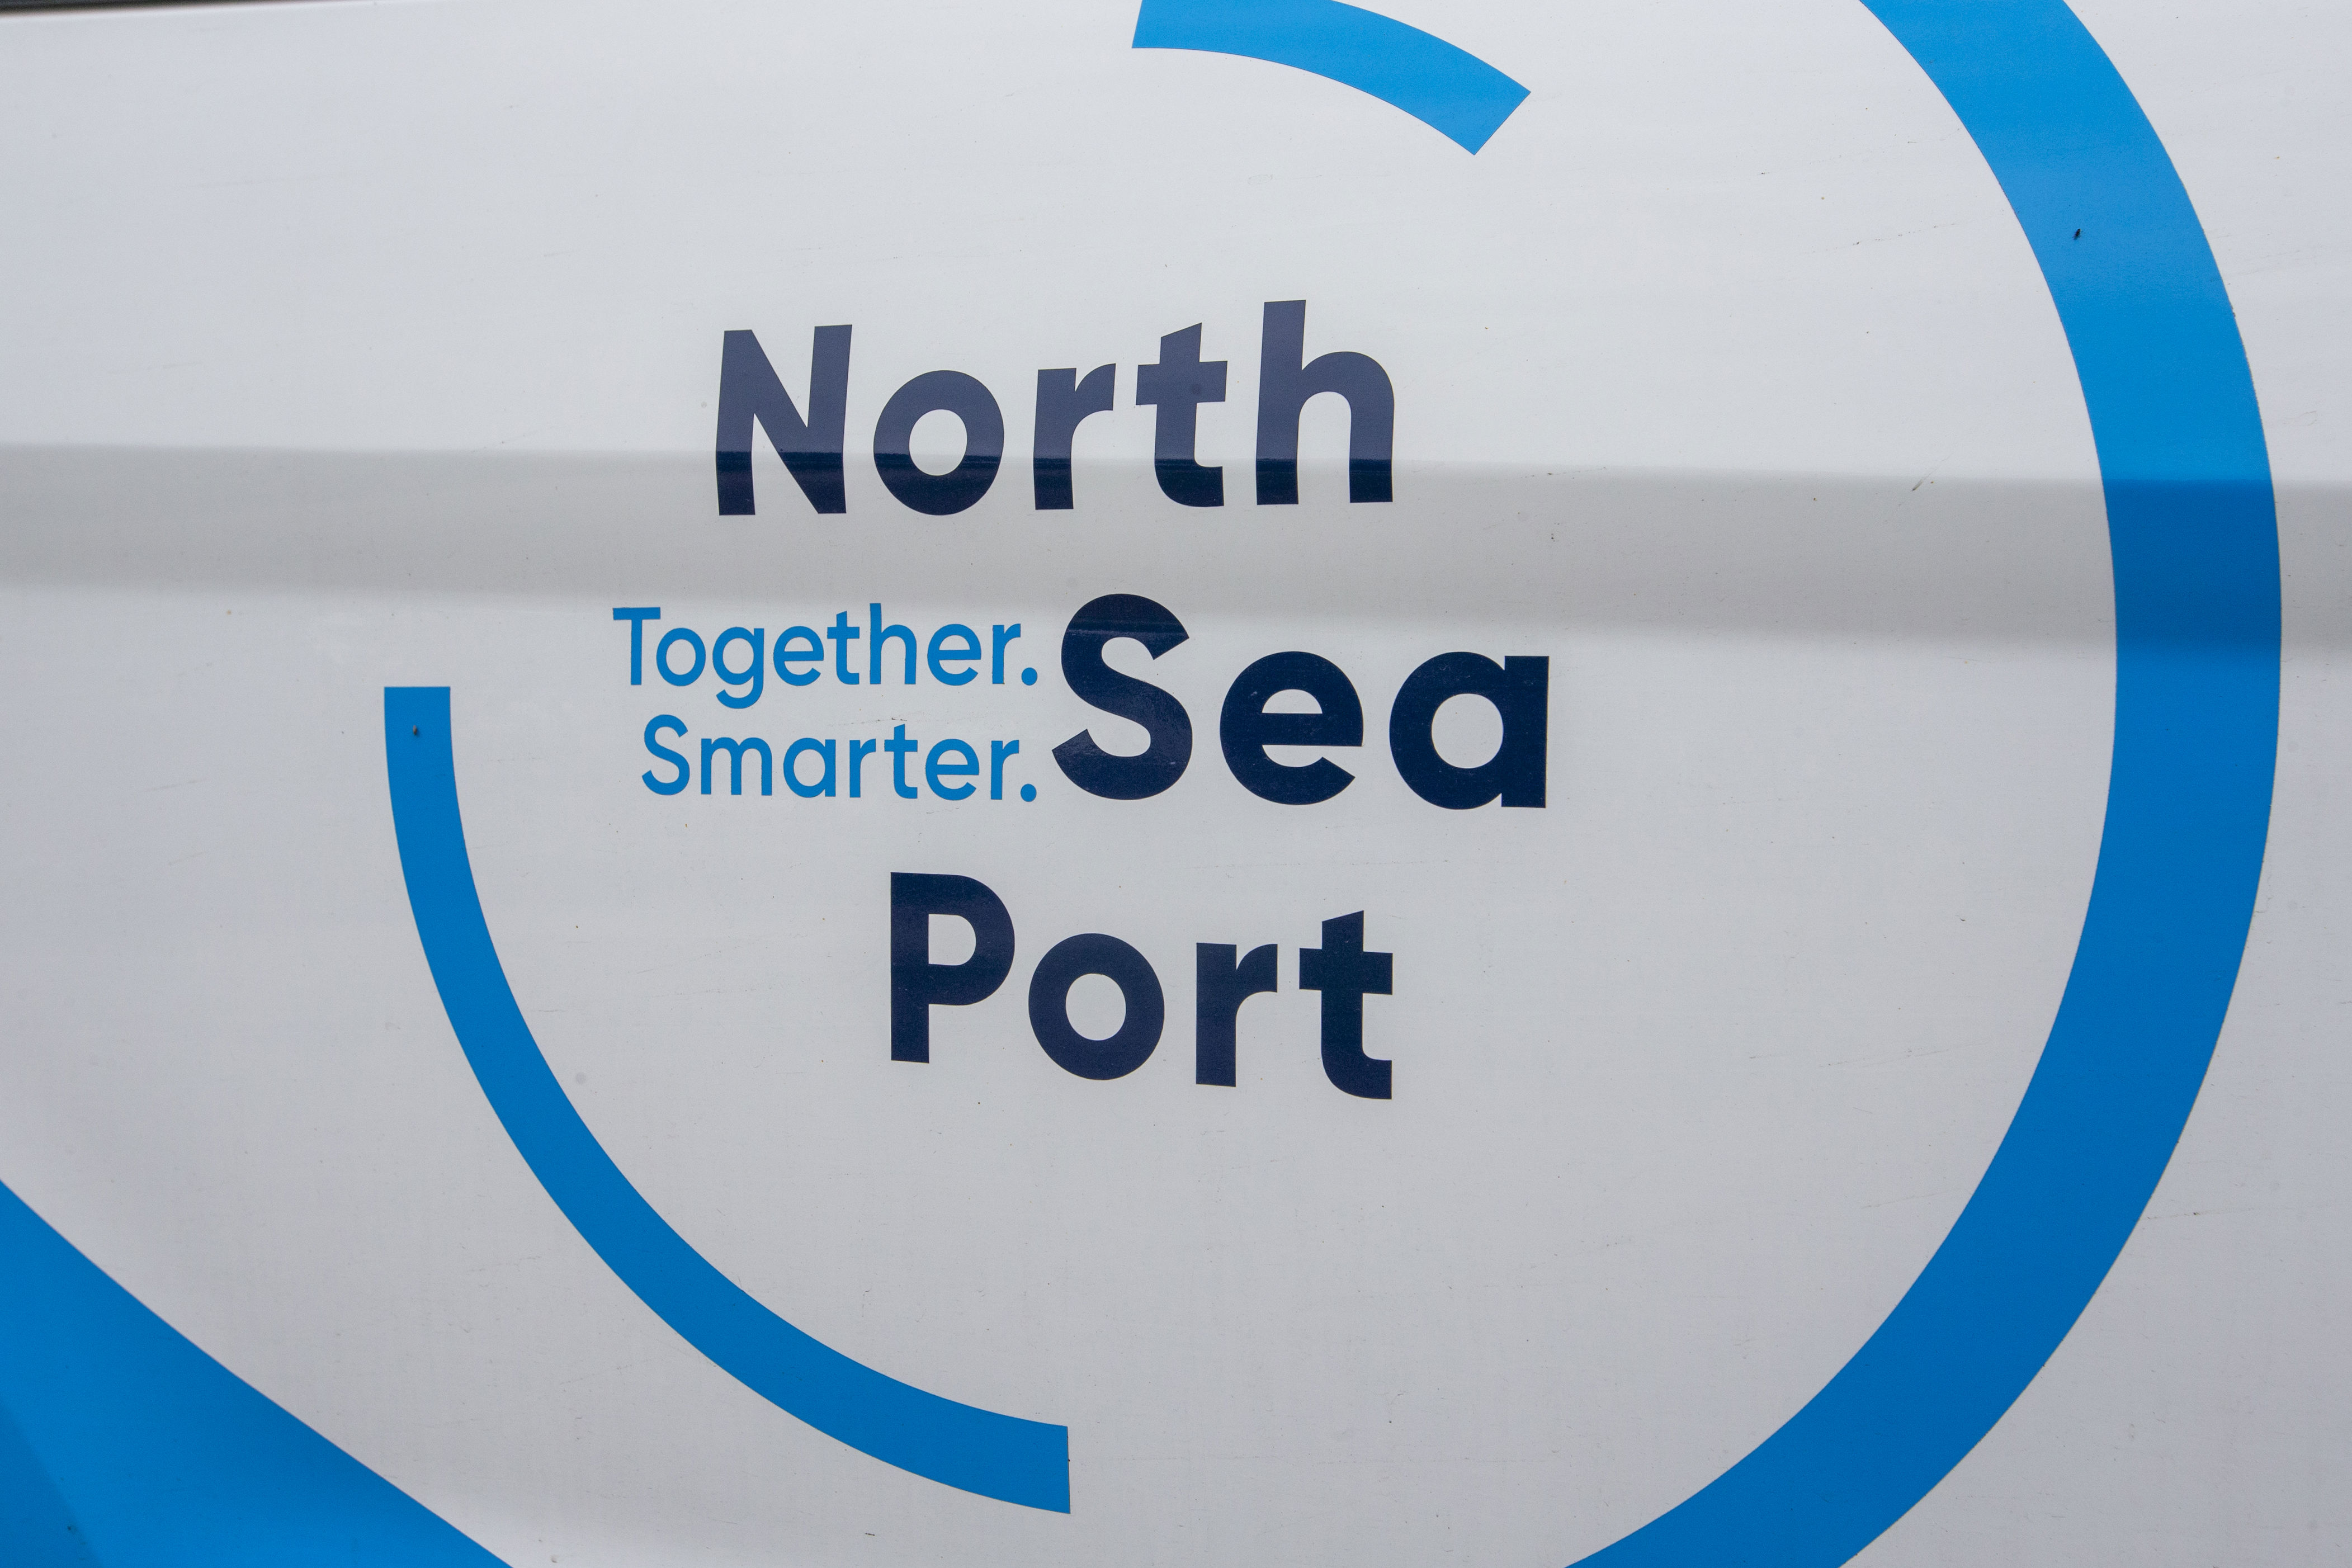 le north sea port construit une jetée qui pourra offrir jusqu'à quatre croisières par jour